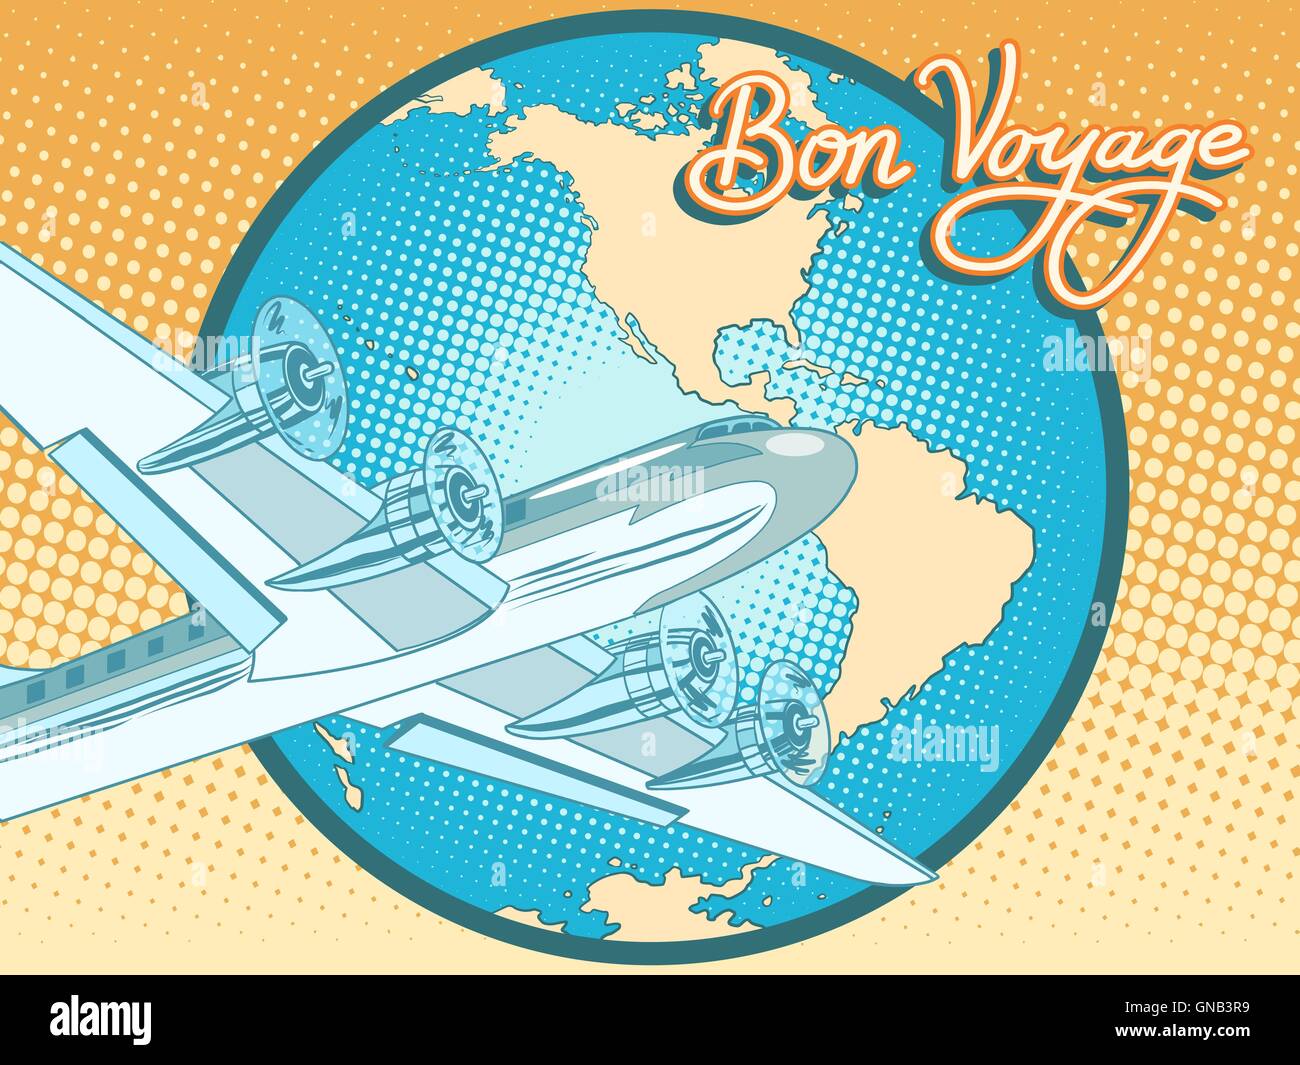 Bon voyage avion rétro poster abstract Illustration de Vecteur